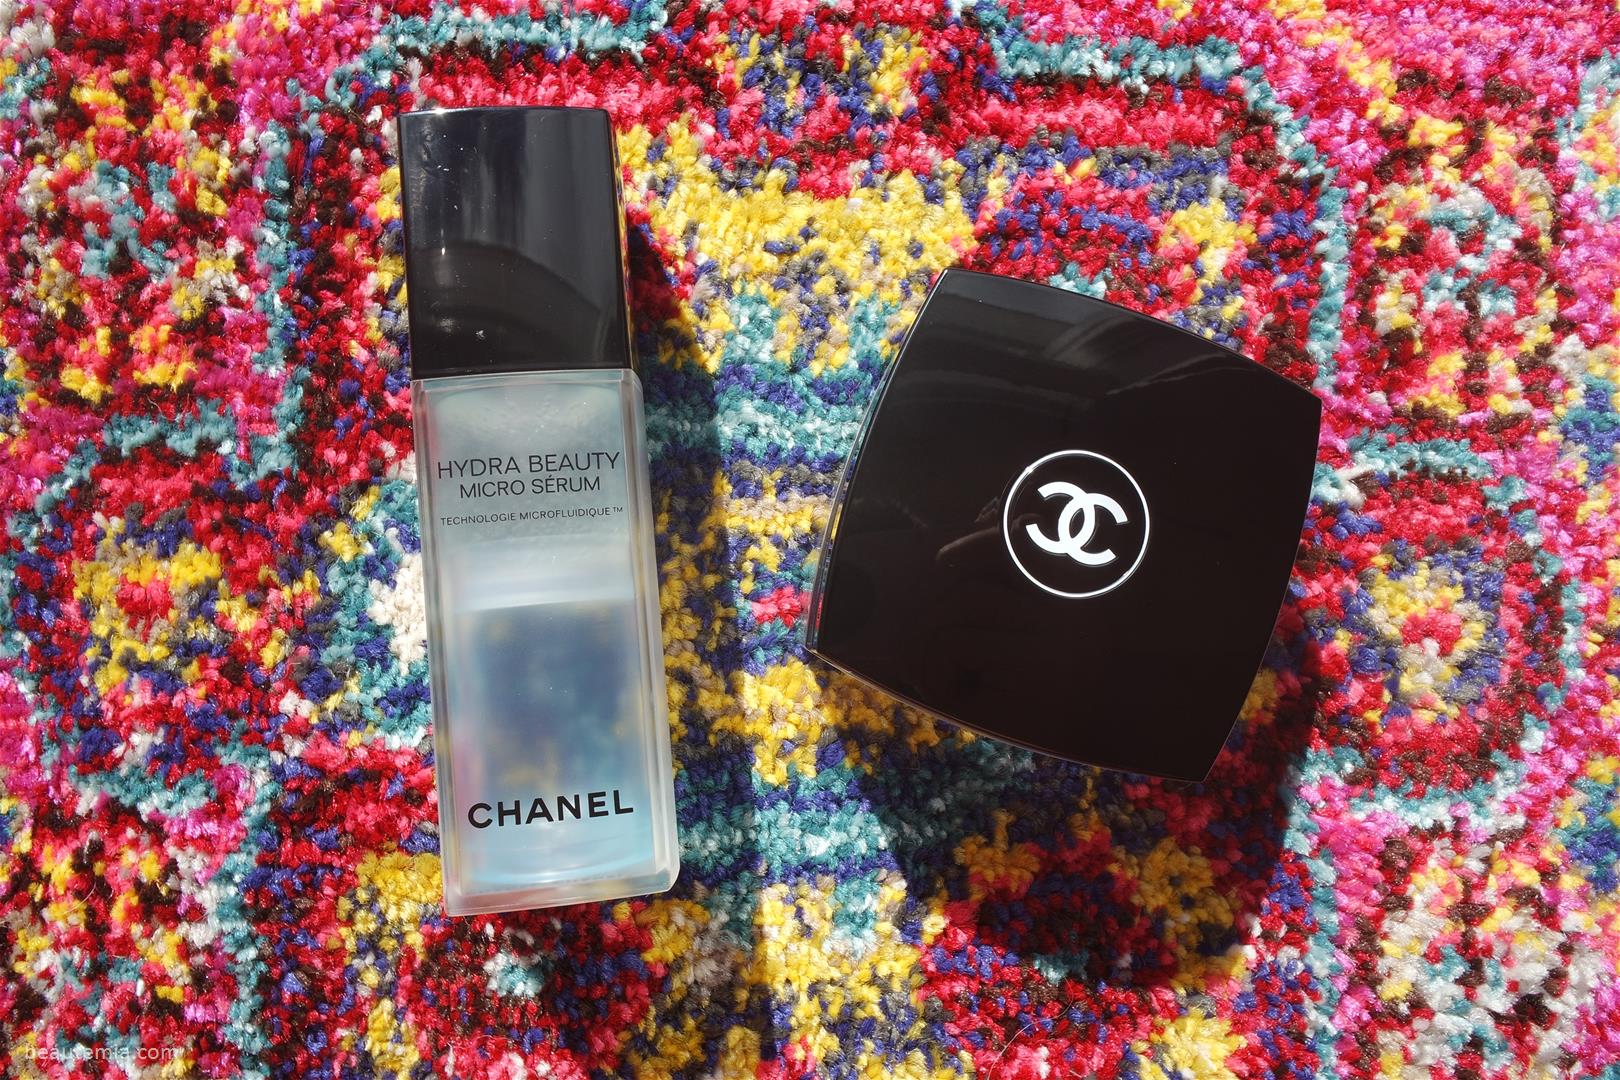 Chanel Hydra Beauty Micro Creme, Chanel Hydra Beauty Micro Serum, Chanel hydra beauty eye gel & Chanel hydra beauty mask